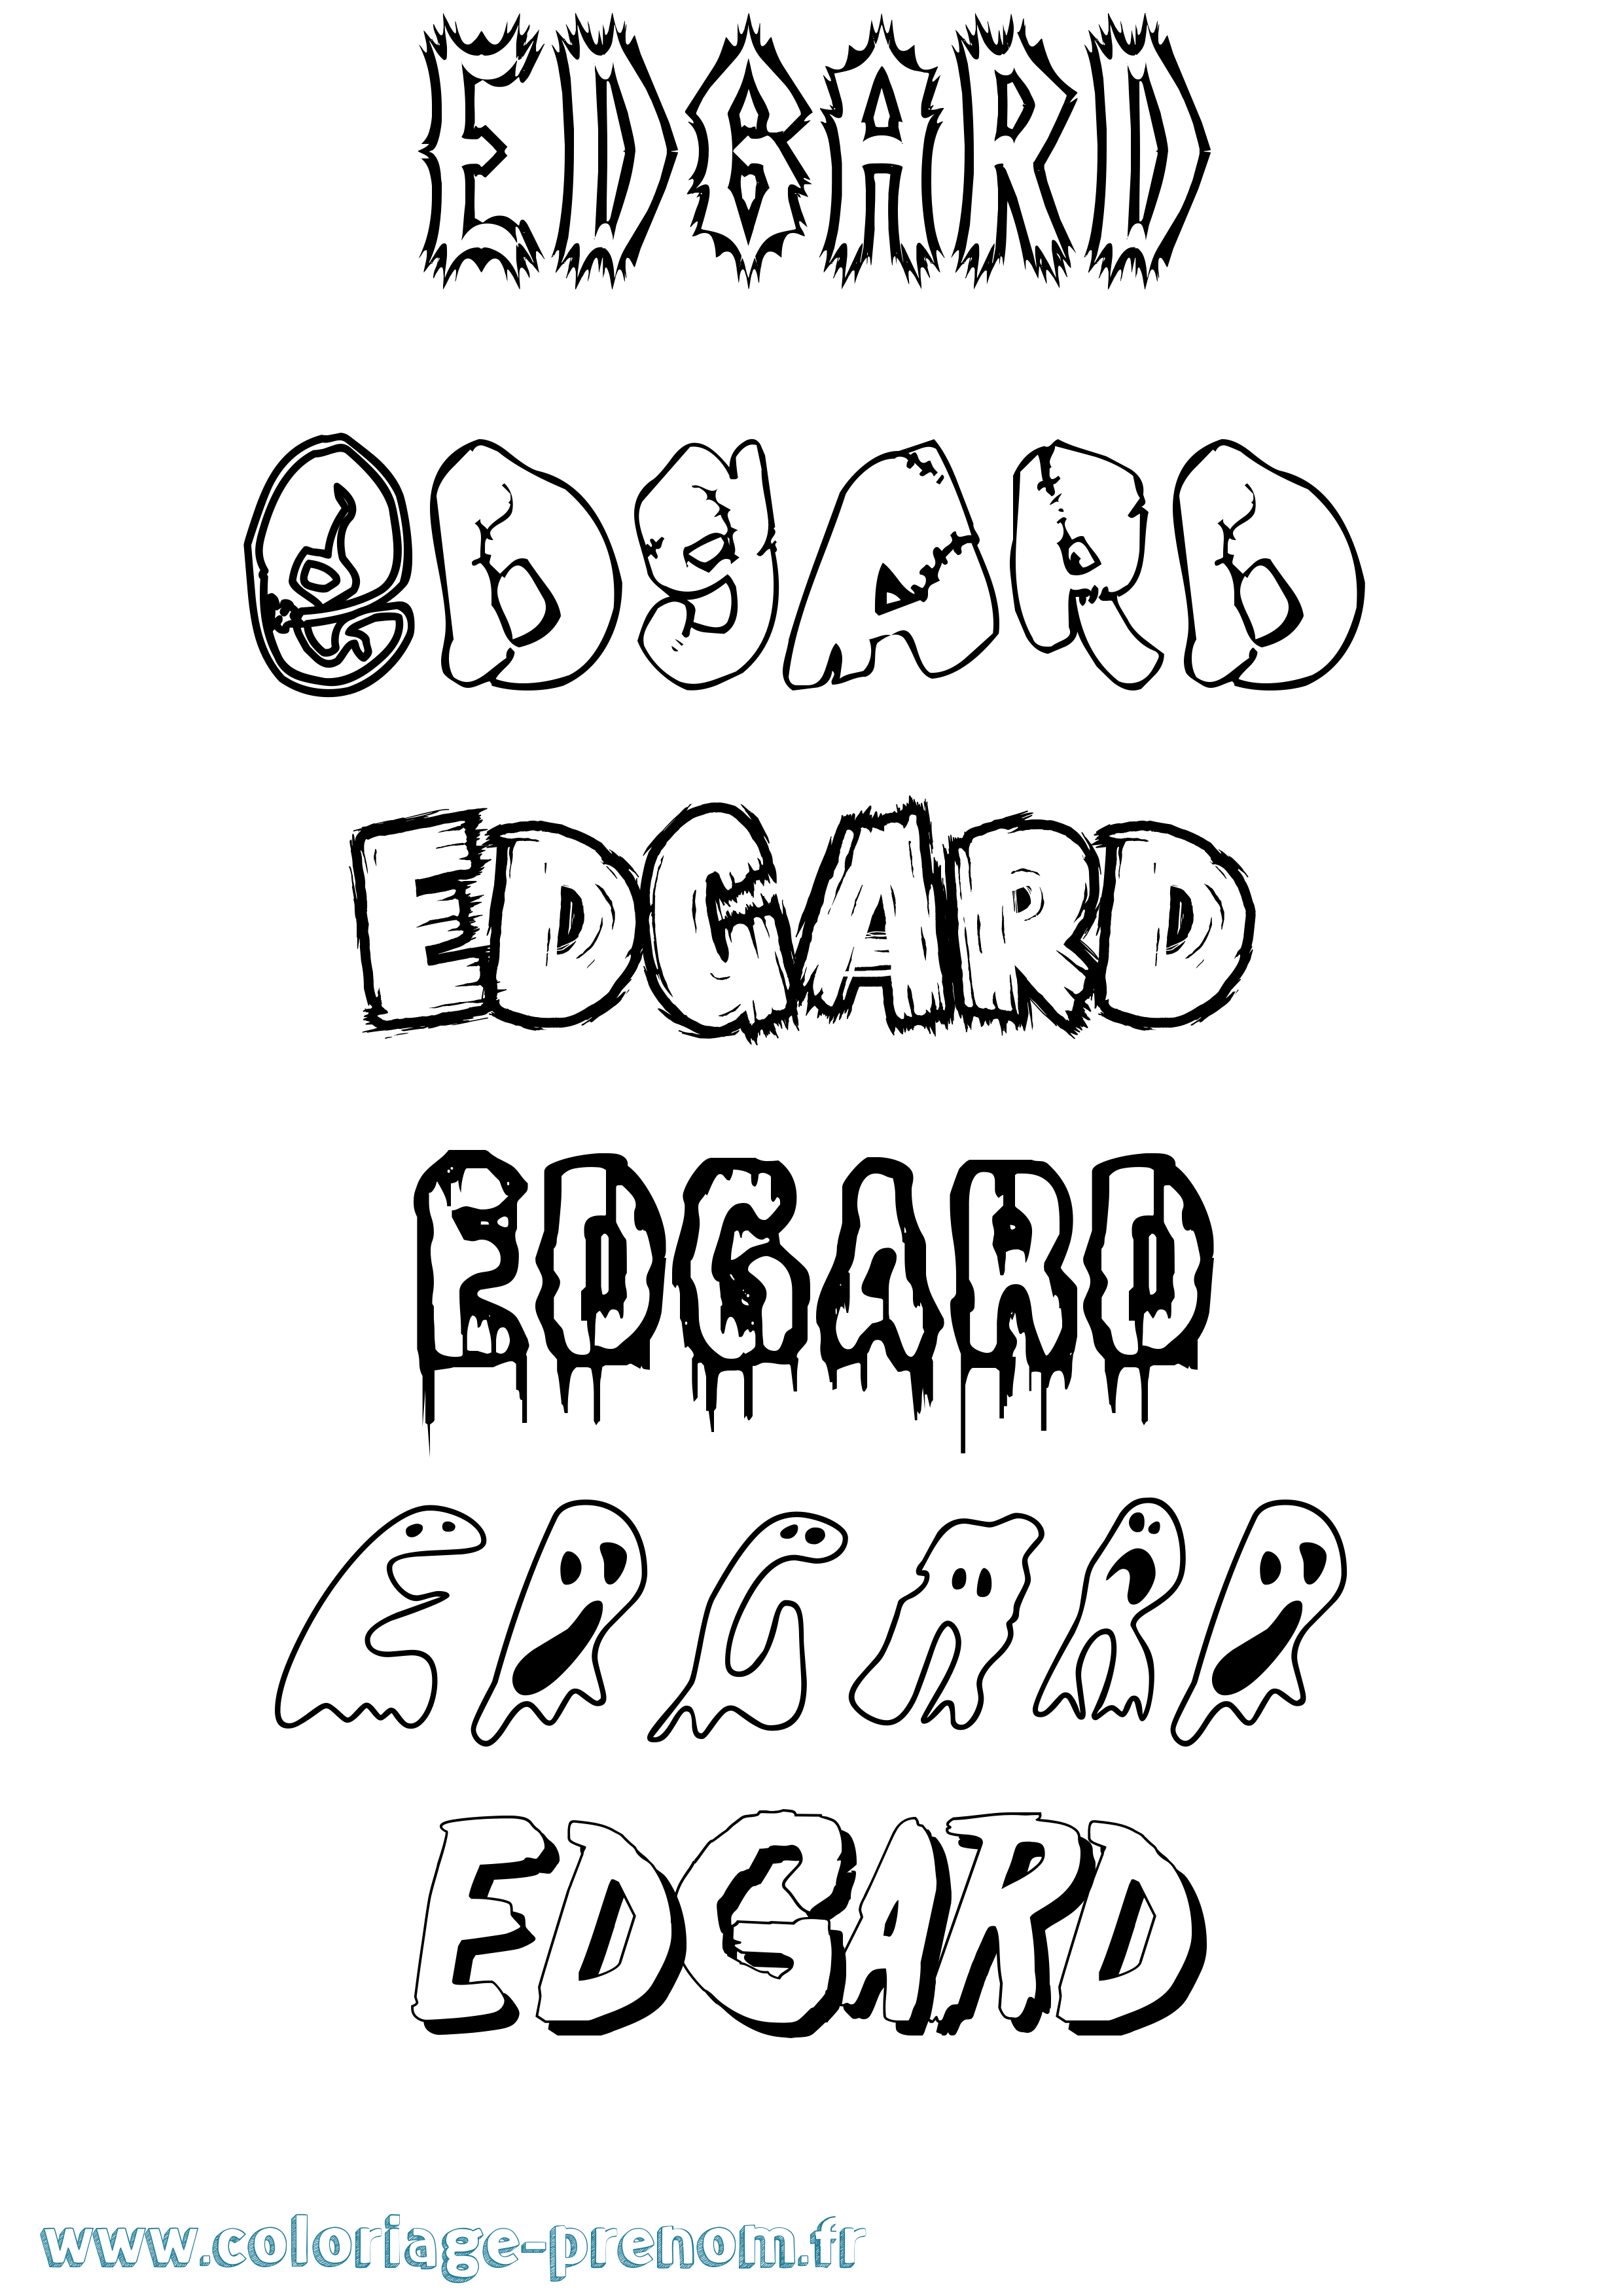 Coloriage prénom Edgard Frisson